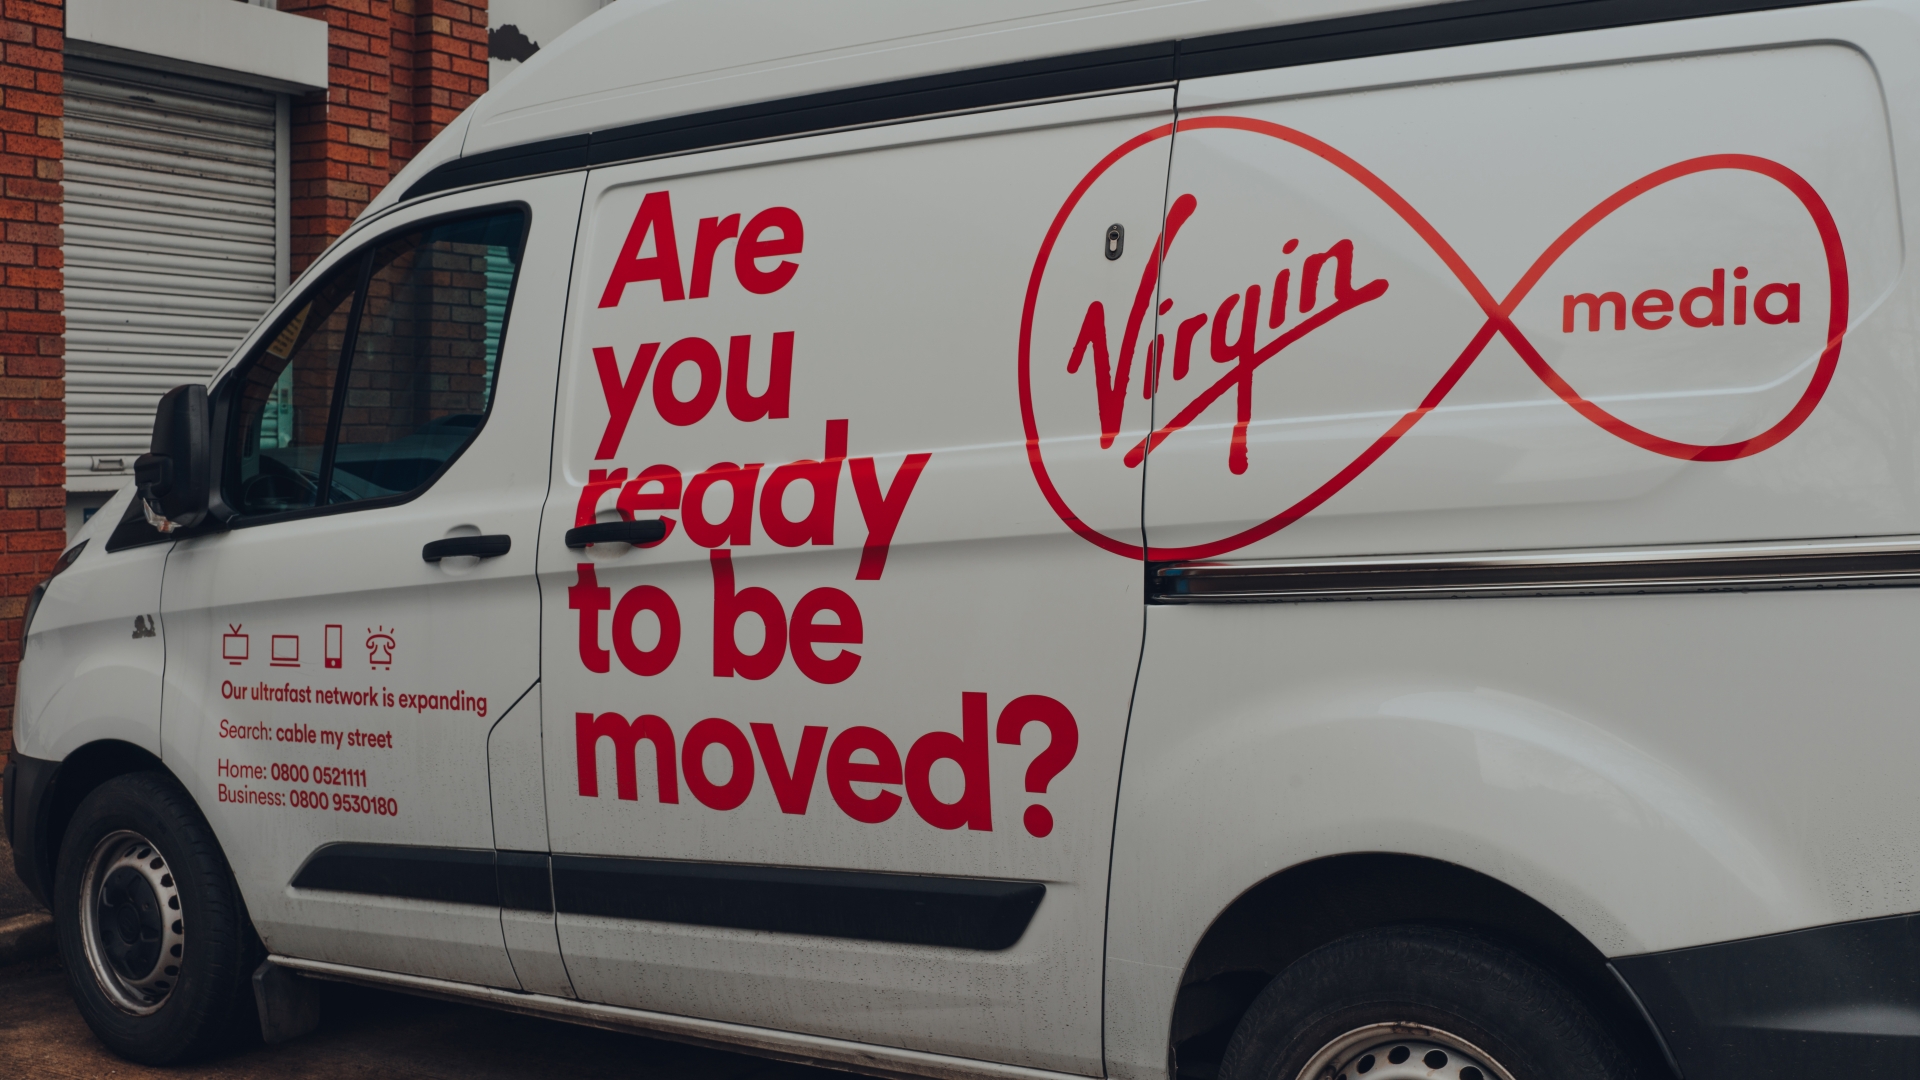 ความไม่พอใจที่ลูกค้า Virgin Media หลายล้านรายกล่าวว่าพวกเขาอาจต้องเผชิญกับค่าใช้จ่าย 25 25 ล้านหากพวกเขาไม่ตอบคำถามวิศวกร